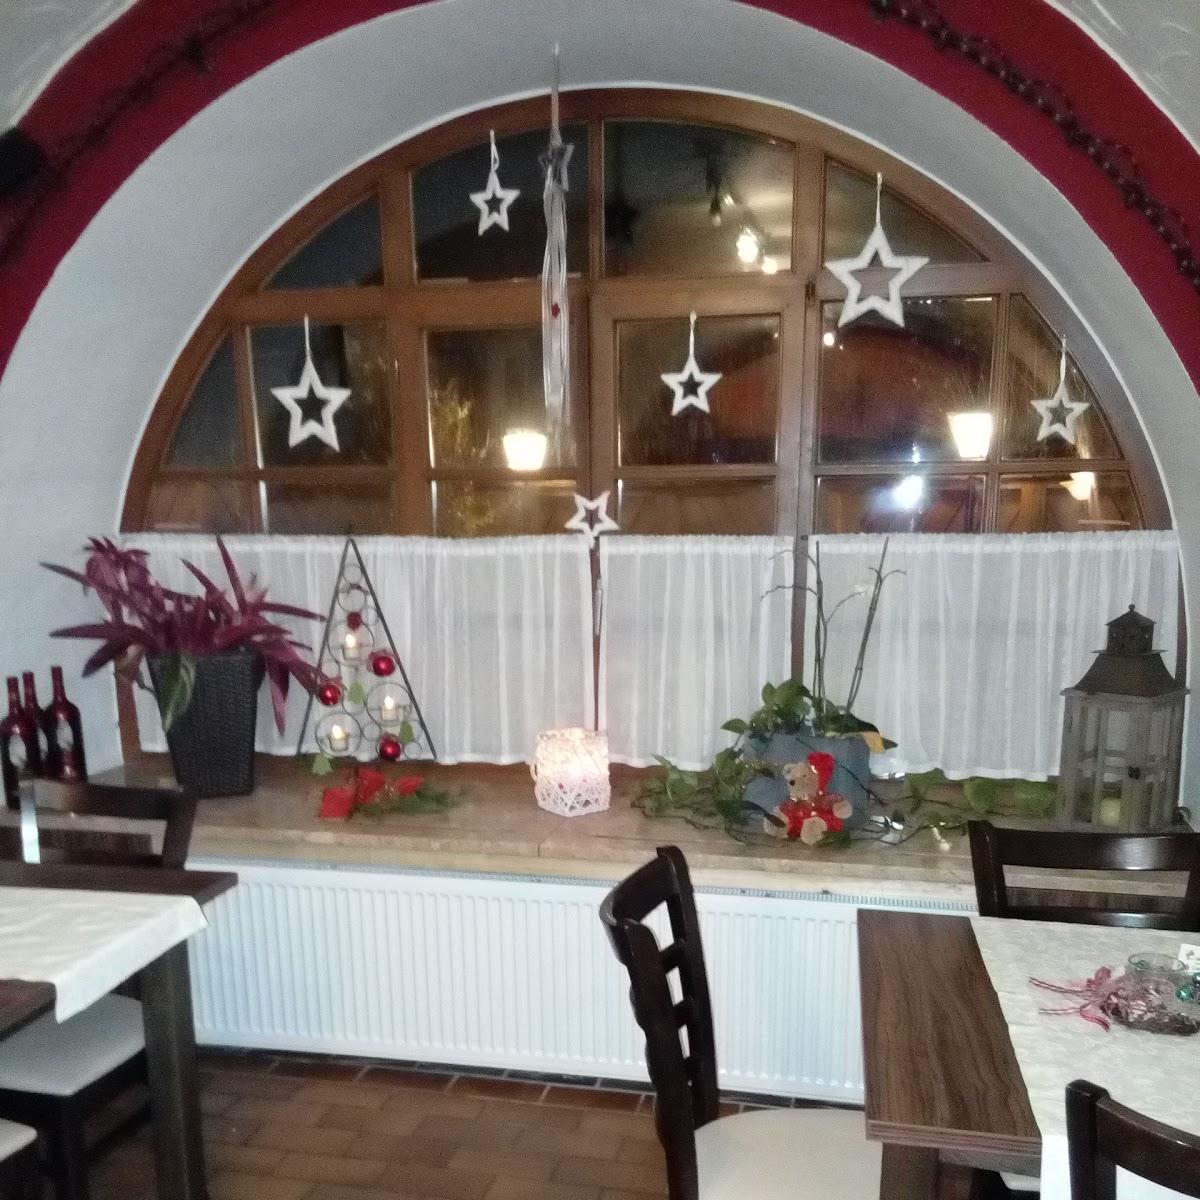 Restaurant "Da Laura" in Thiersheim